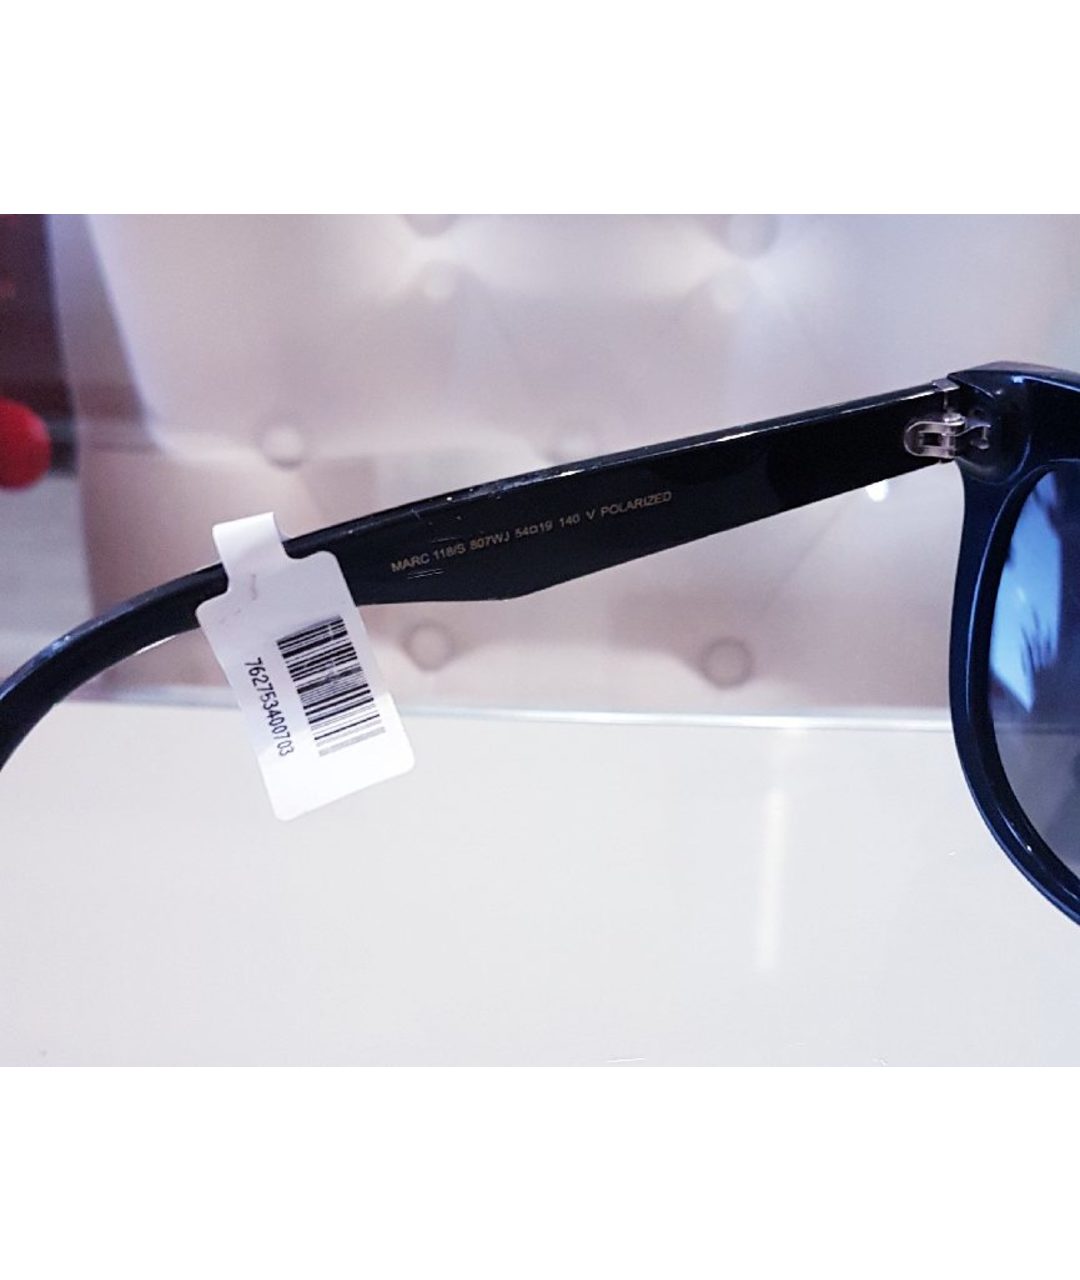 MARC JACOBS Черные пластиковые солнцезащитные очки, фото 4